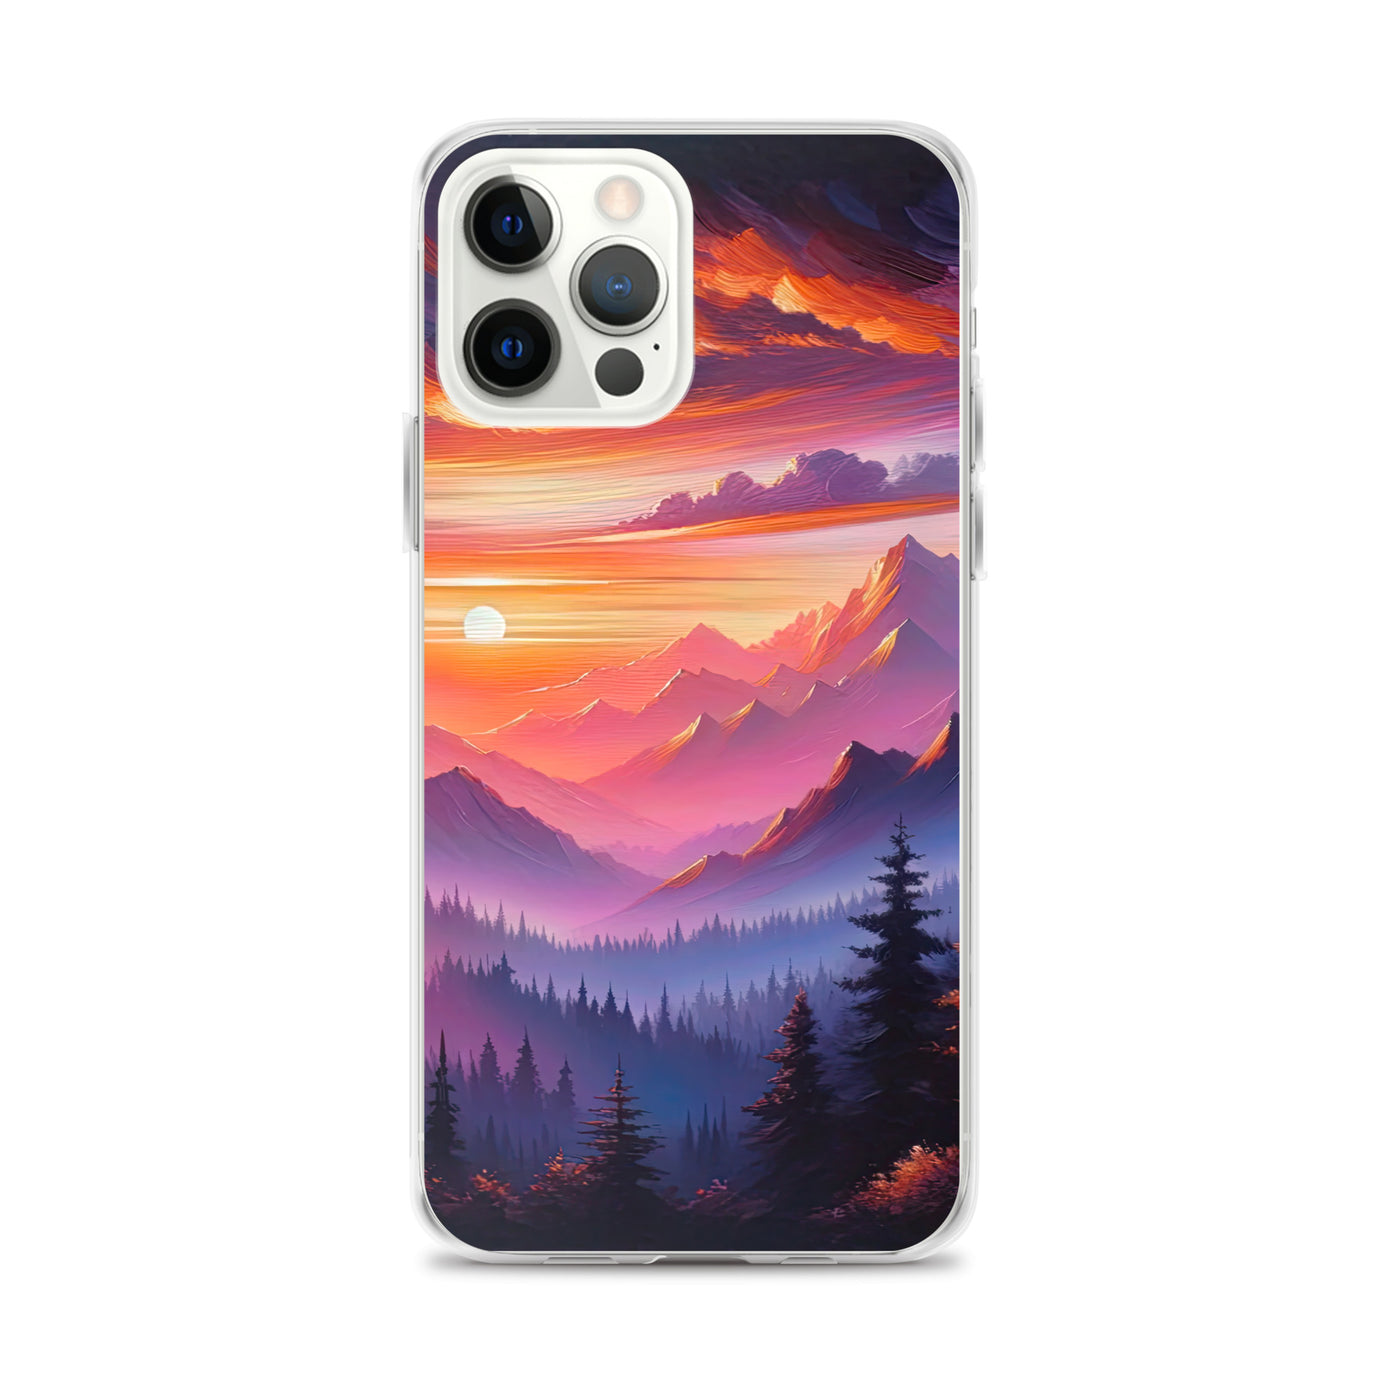 Ölgemälde der Alpenlandschaft im ätherischen Sonnenuntergang, himmlische Farbtöne - iPhone Schutzhülle (durchsichtig) berge xxx yyy zzz iPhone 12 Pro Max